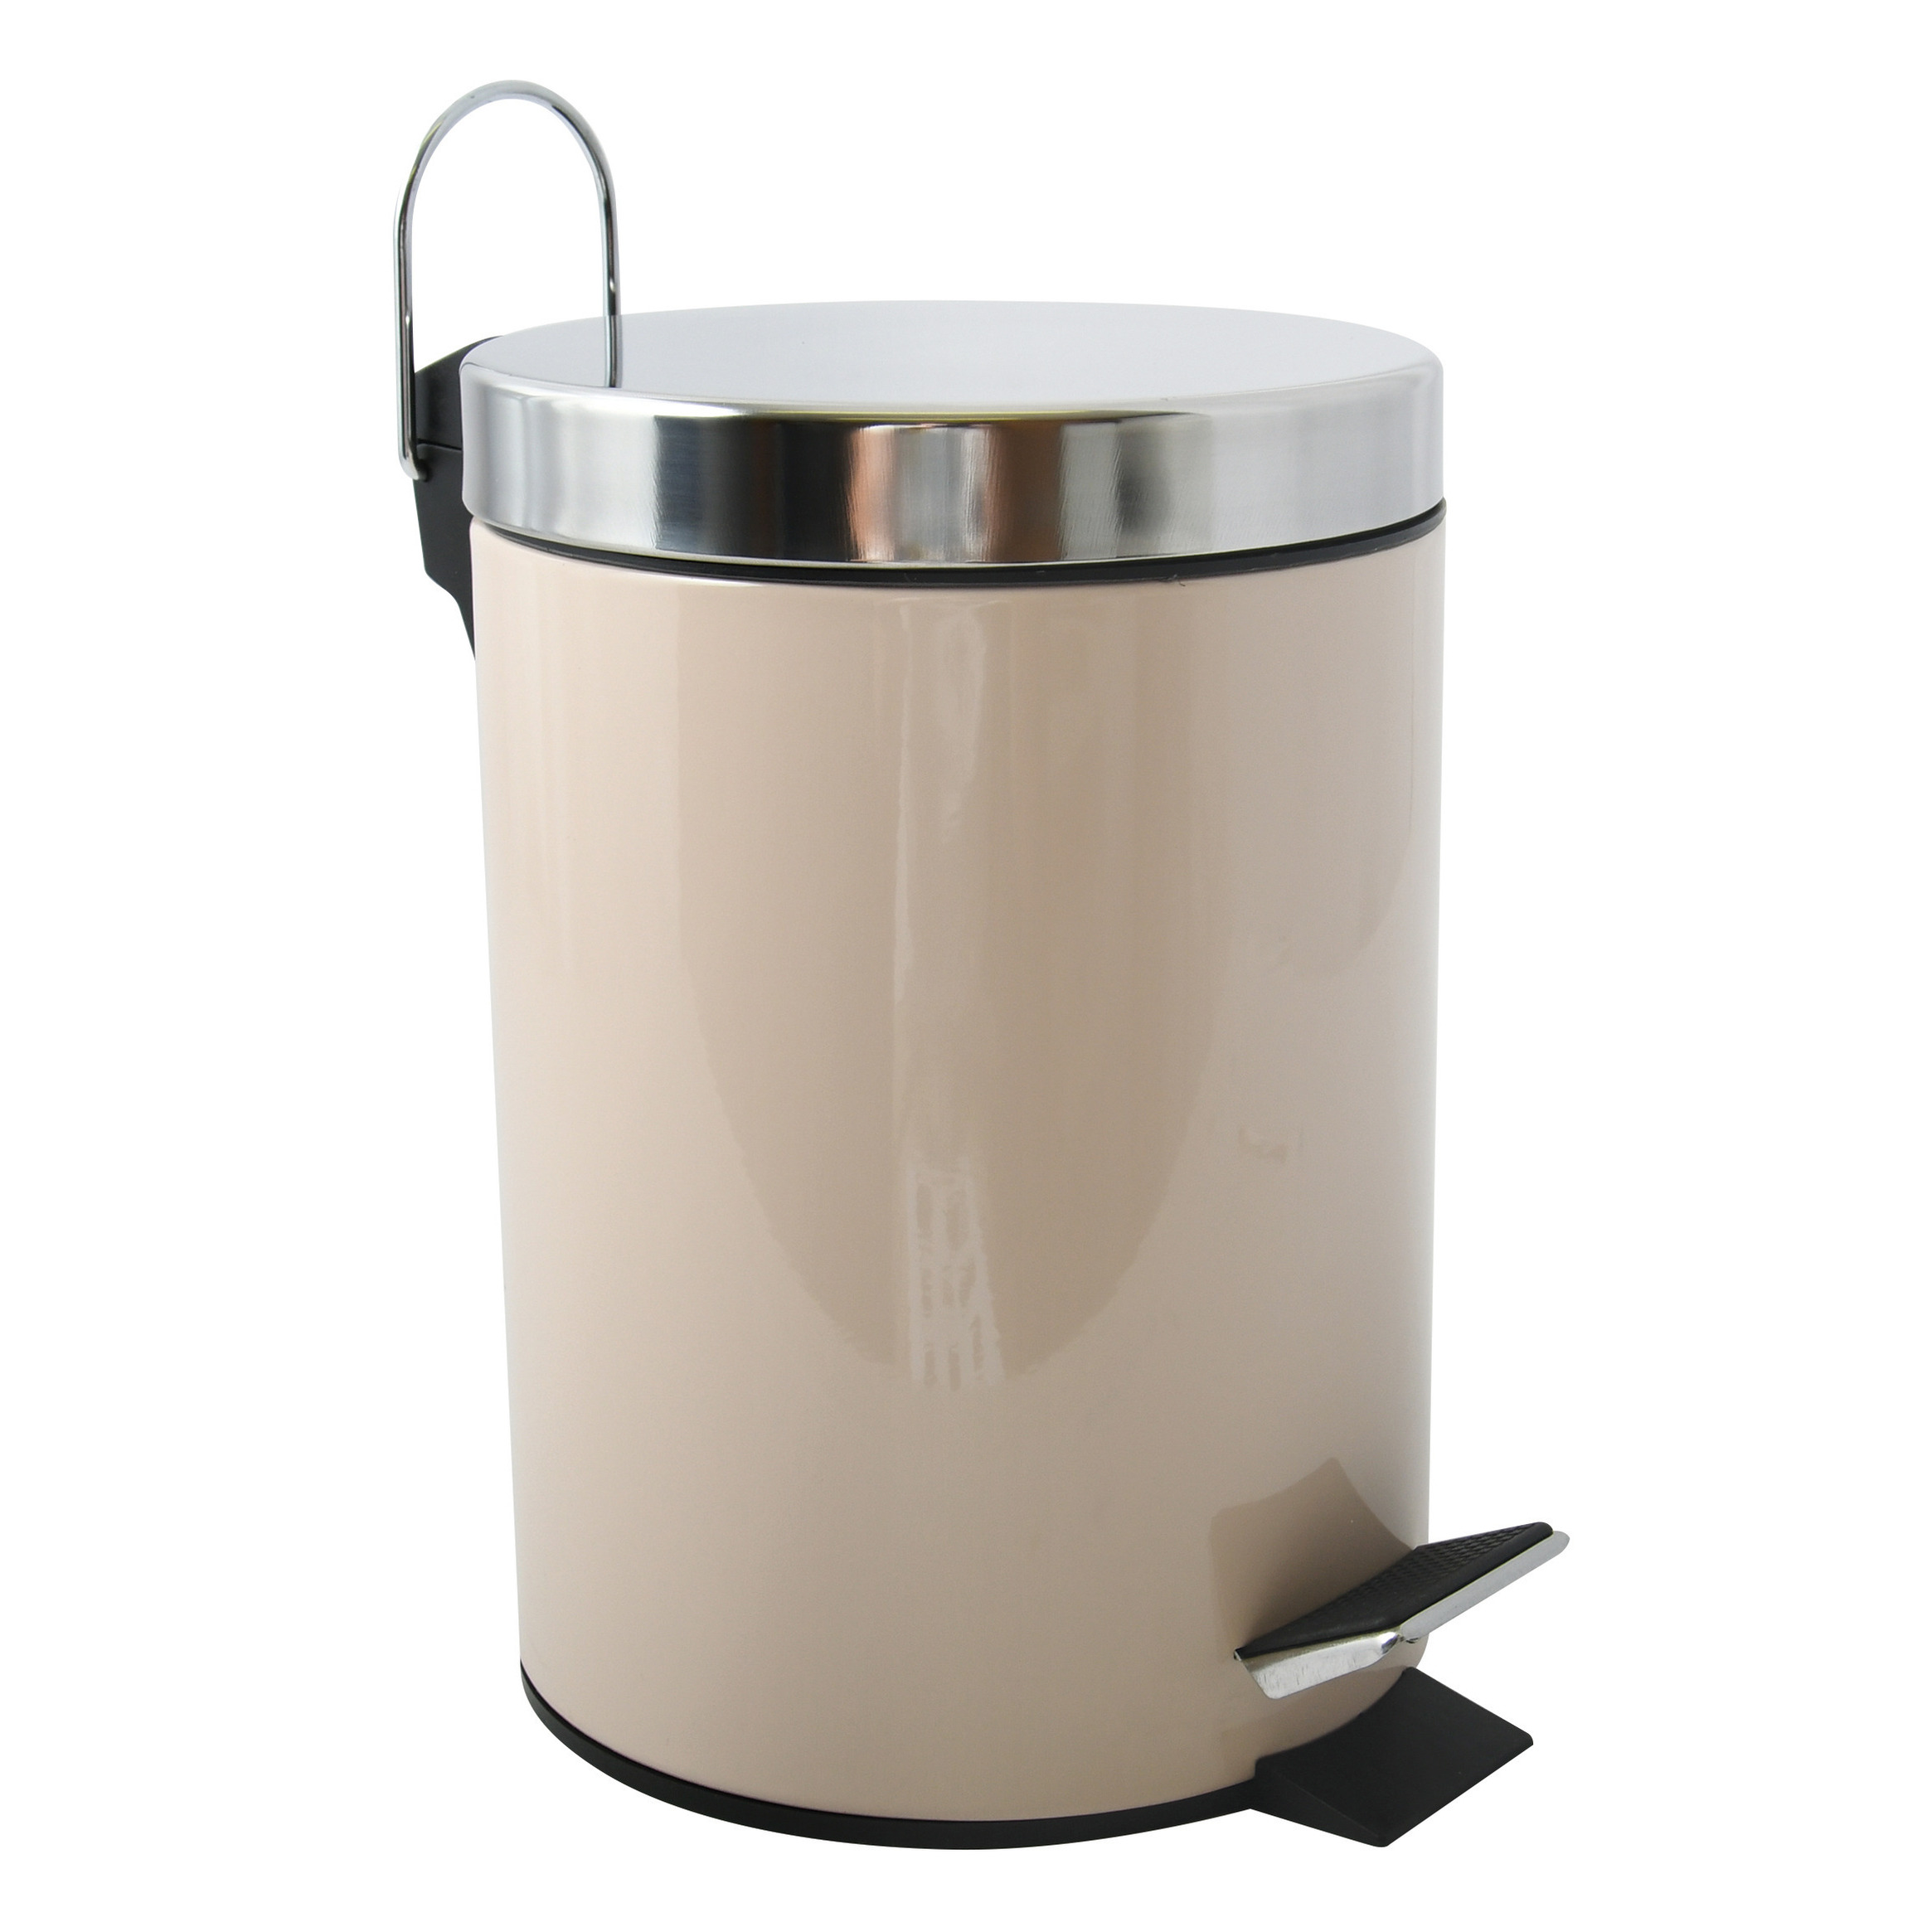 Prullenbak-pedaalemmer metaal beige 3 liter 17 x 25 cm Badkamer-toilet